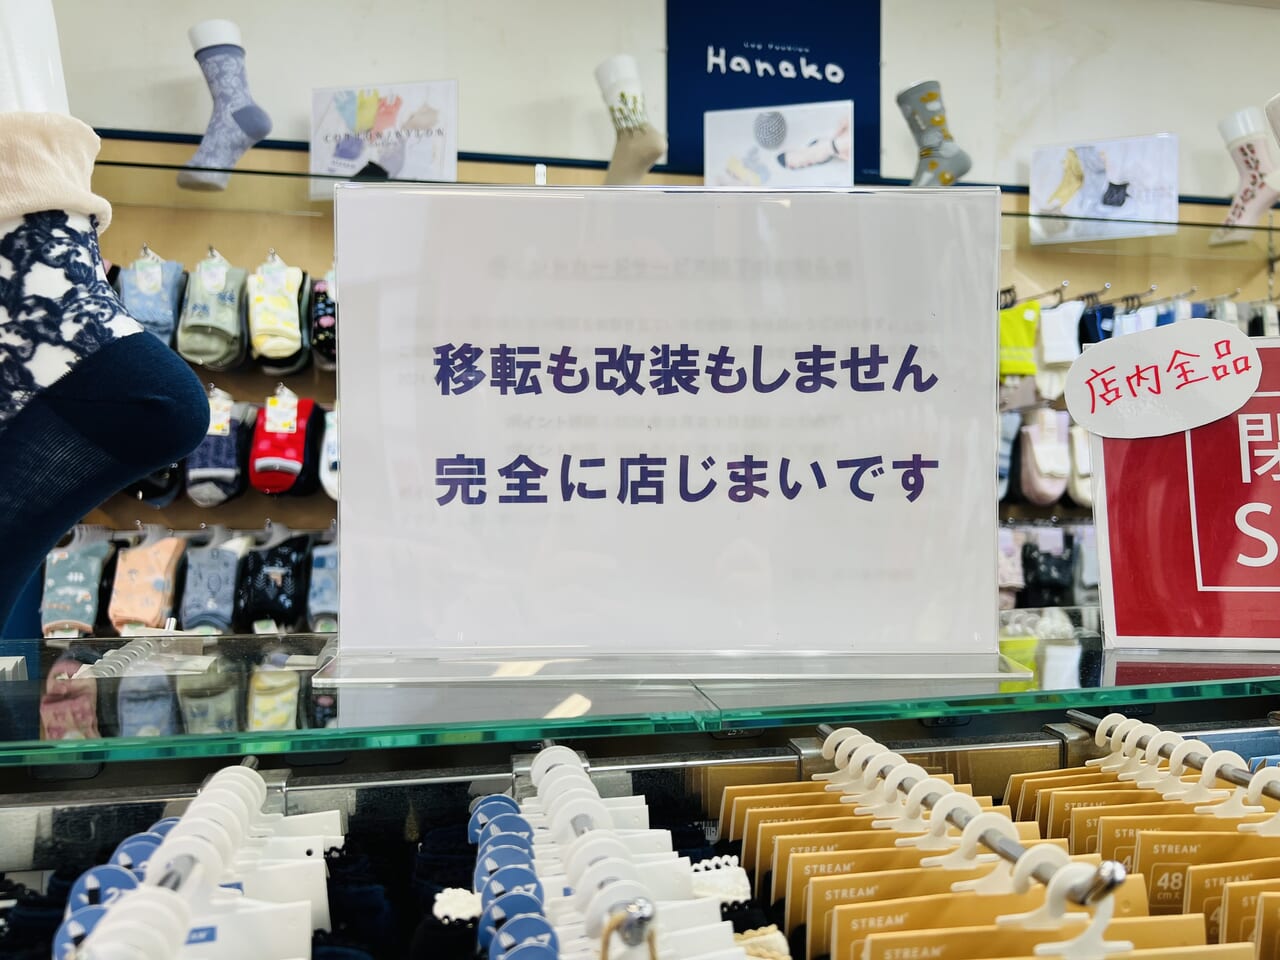 2024年6月なかばに閉店する「Hanako はりまや橋店」の店内の様子